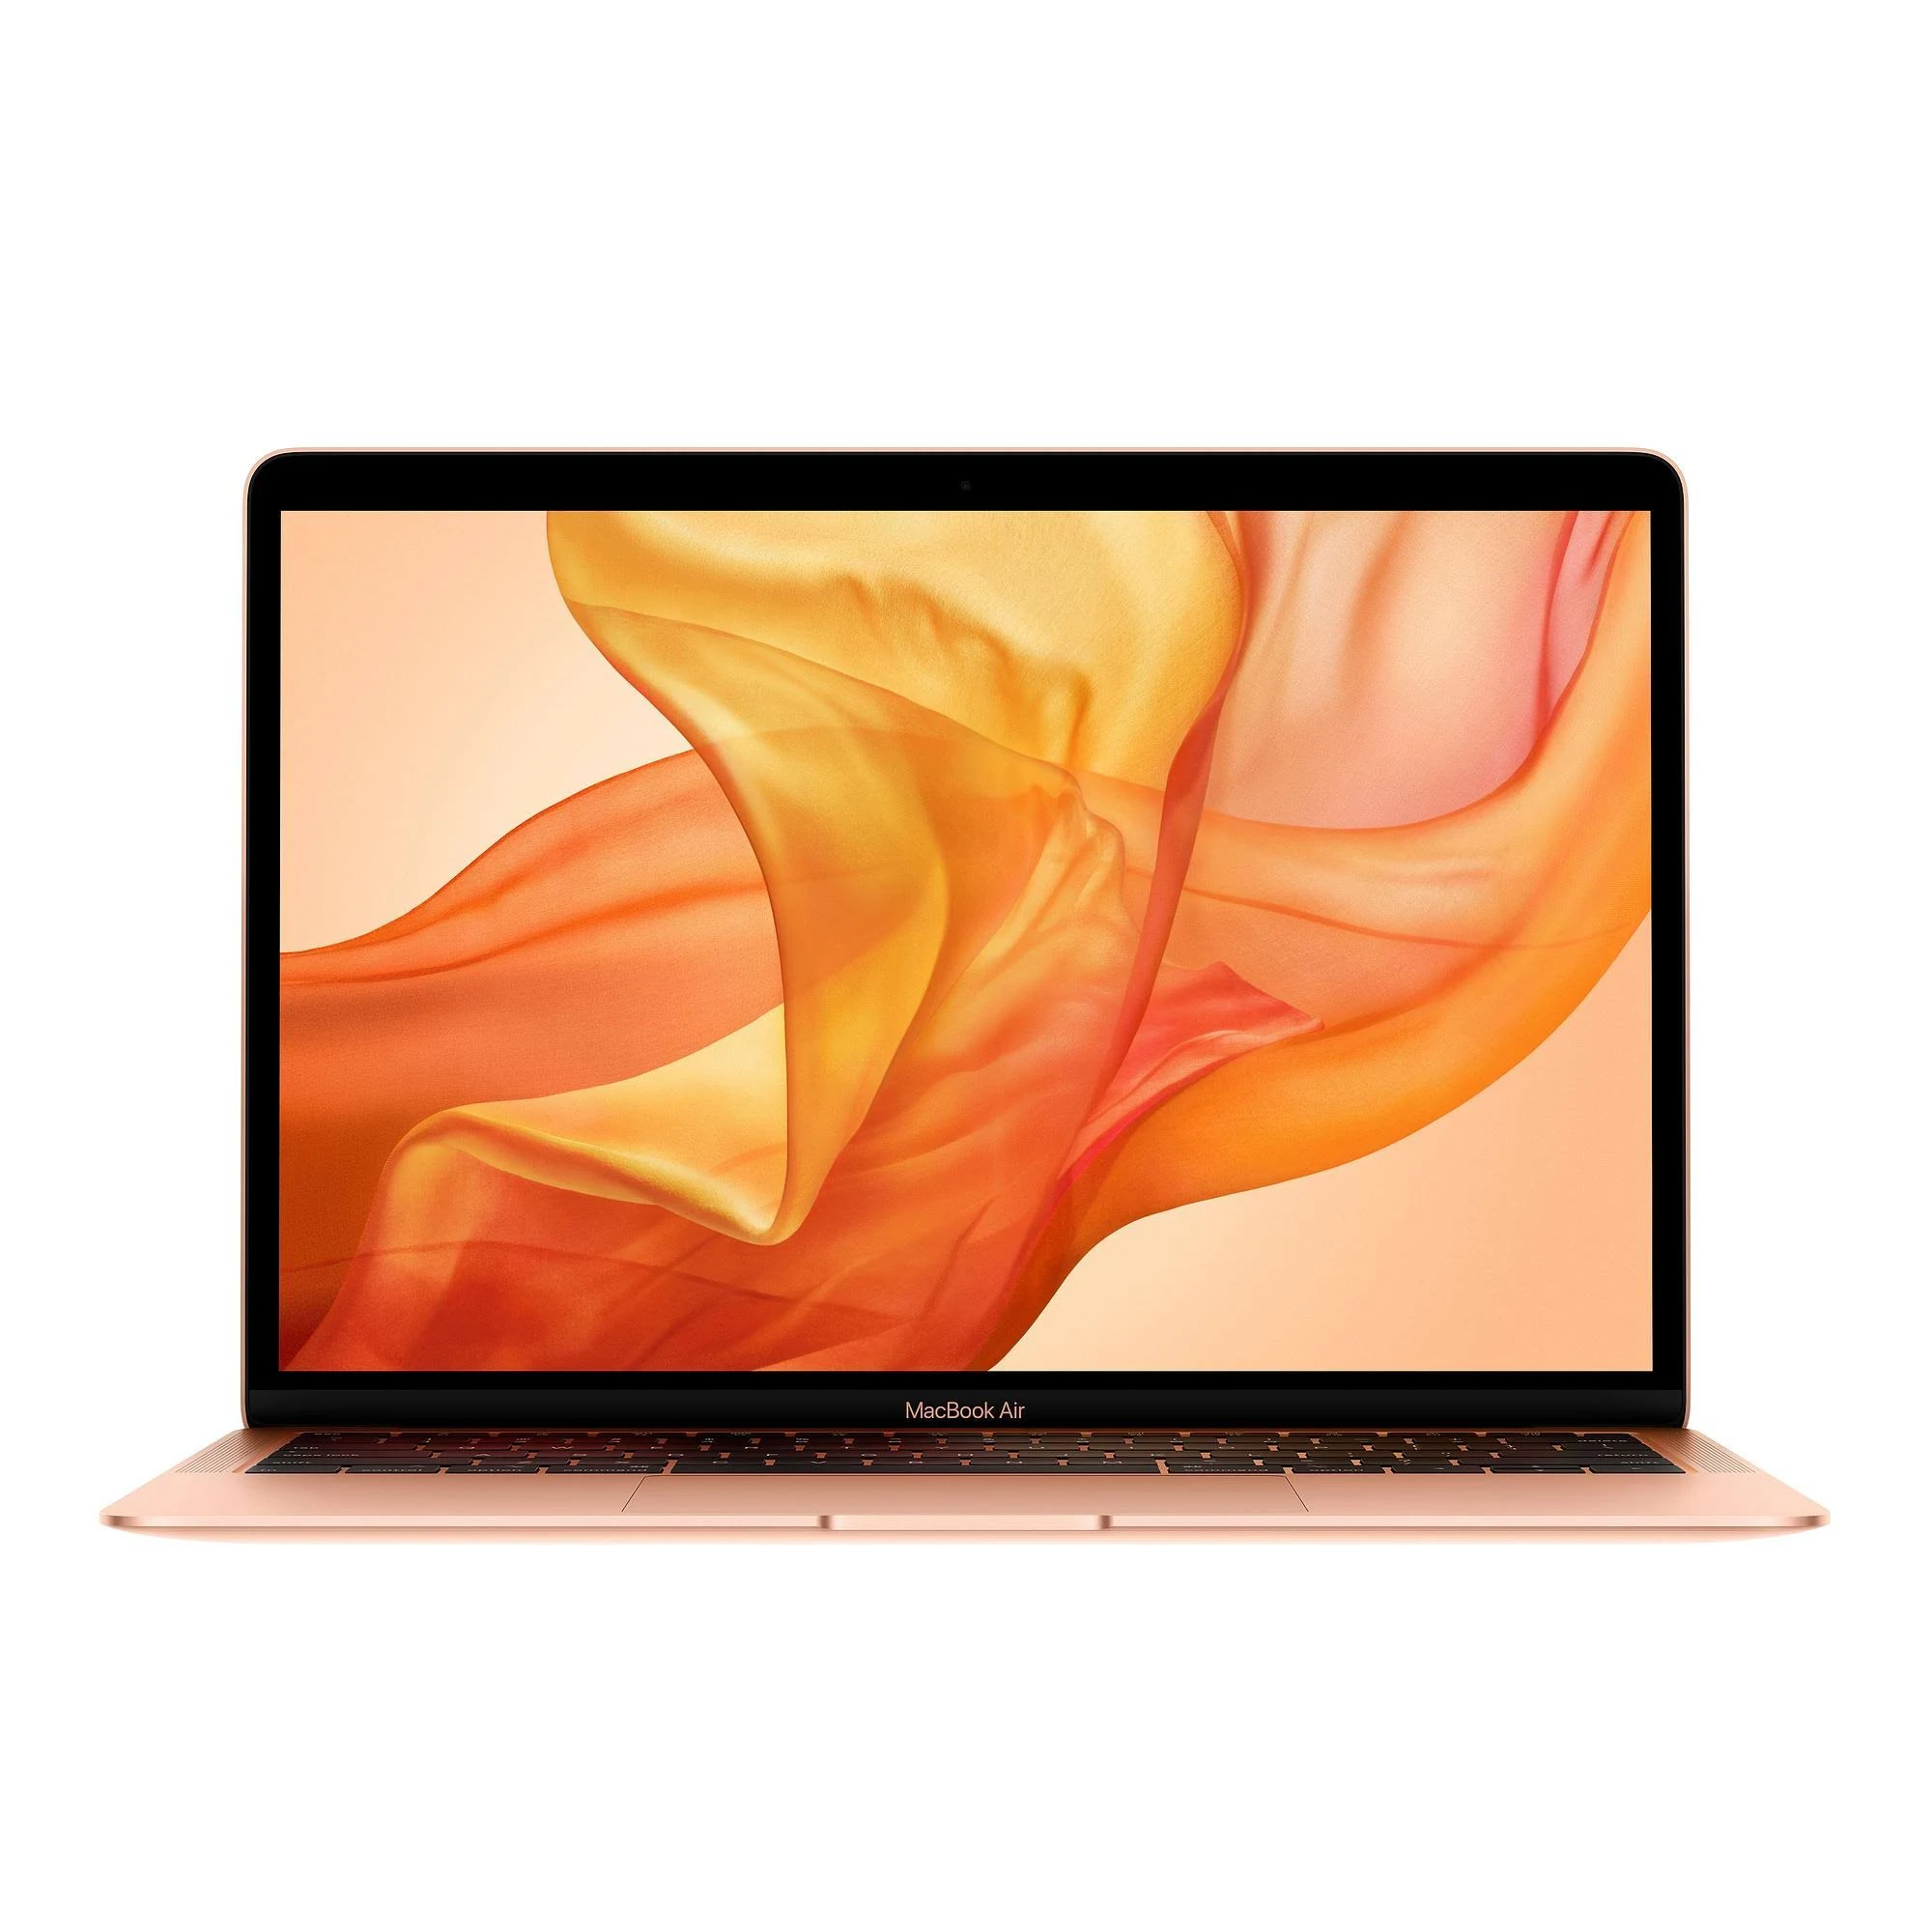 MacBook Air i3 1.1GHz 13 inch 2020 - 512GB SSD - 8GB Ram – Loop